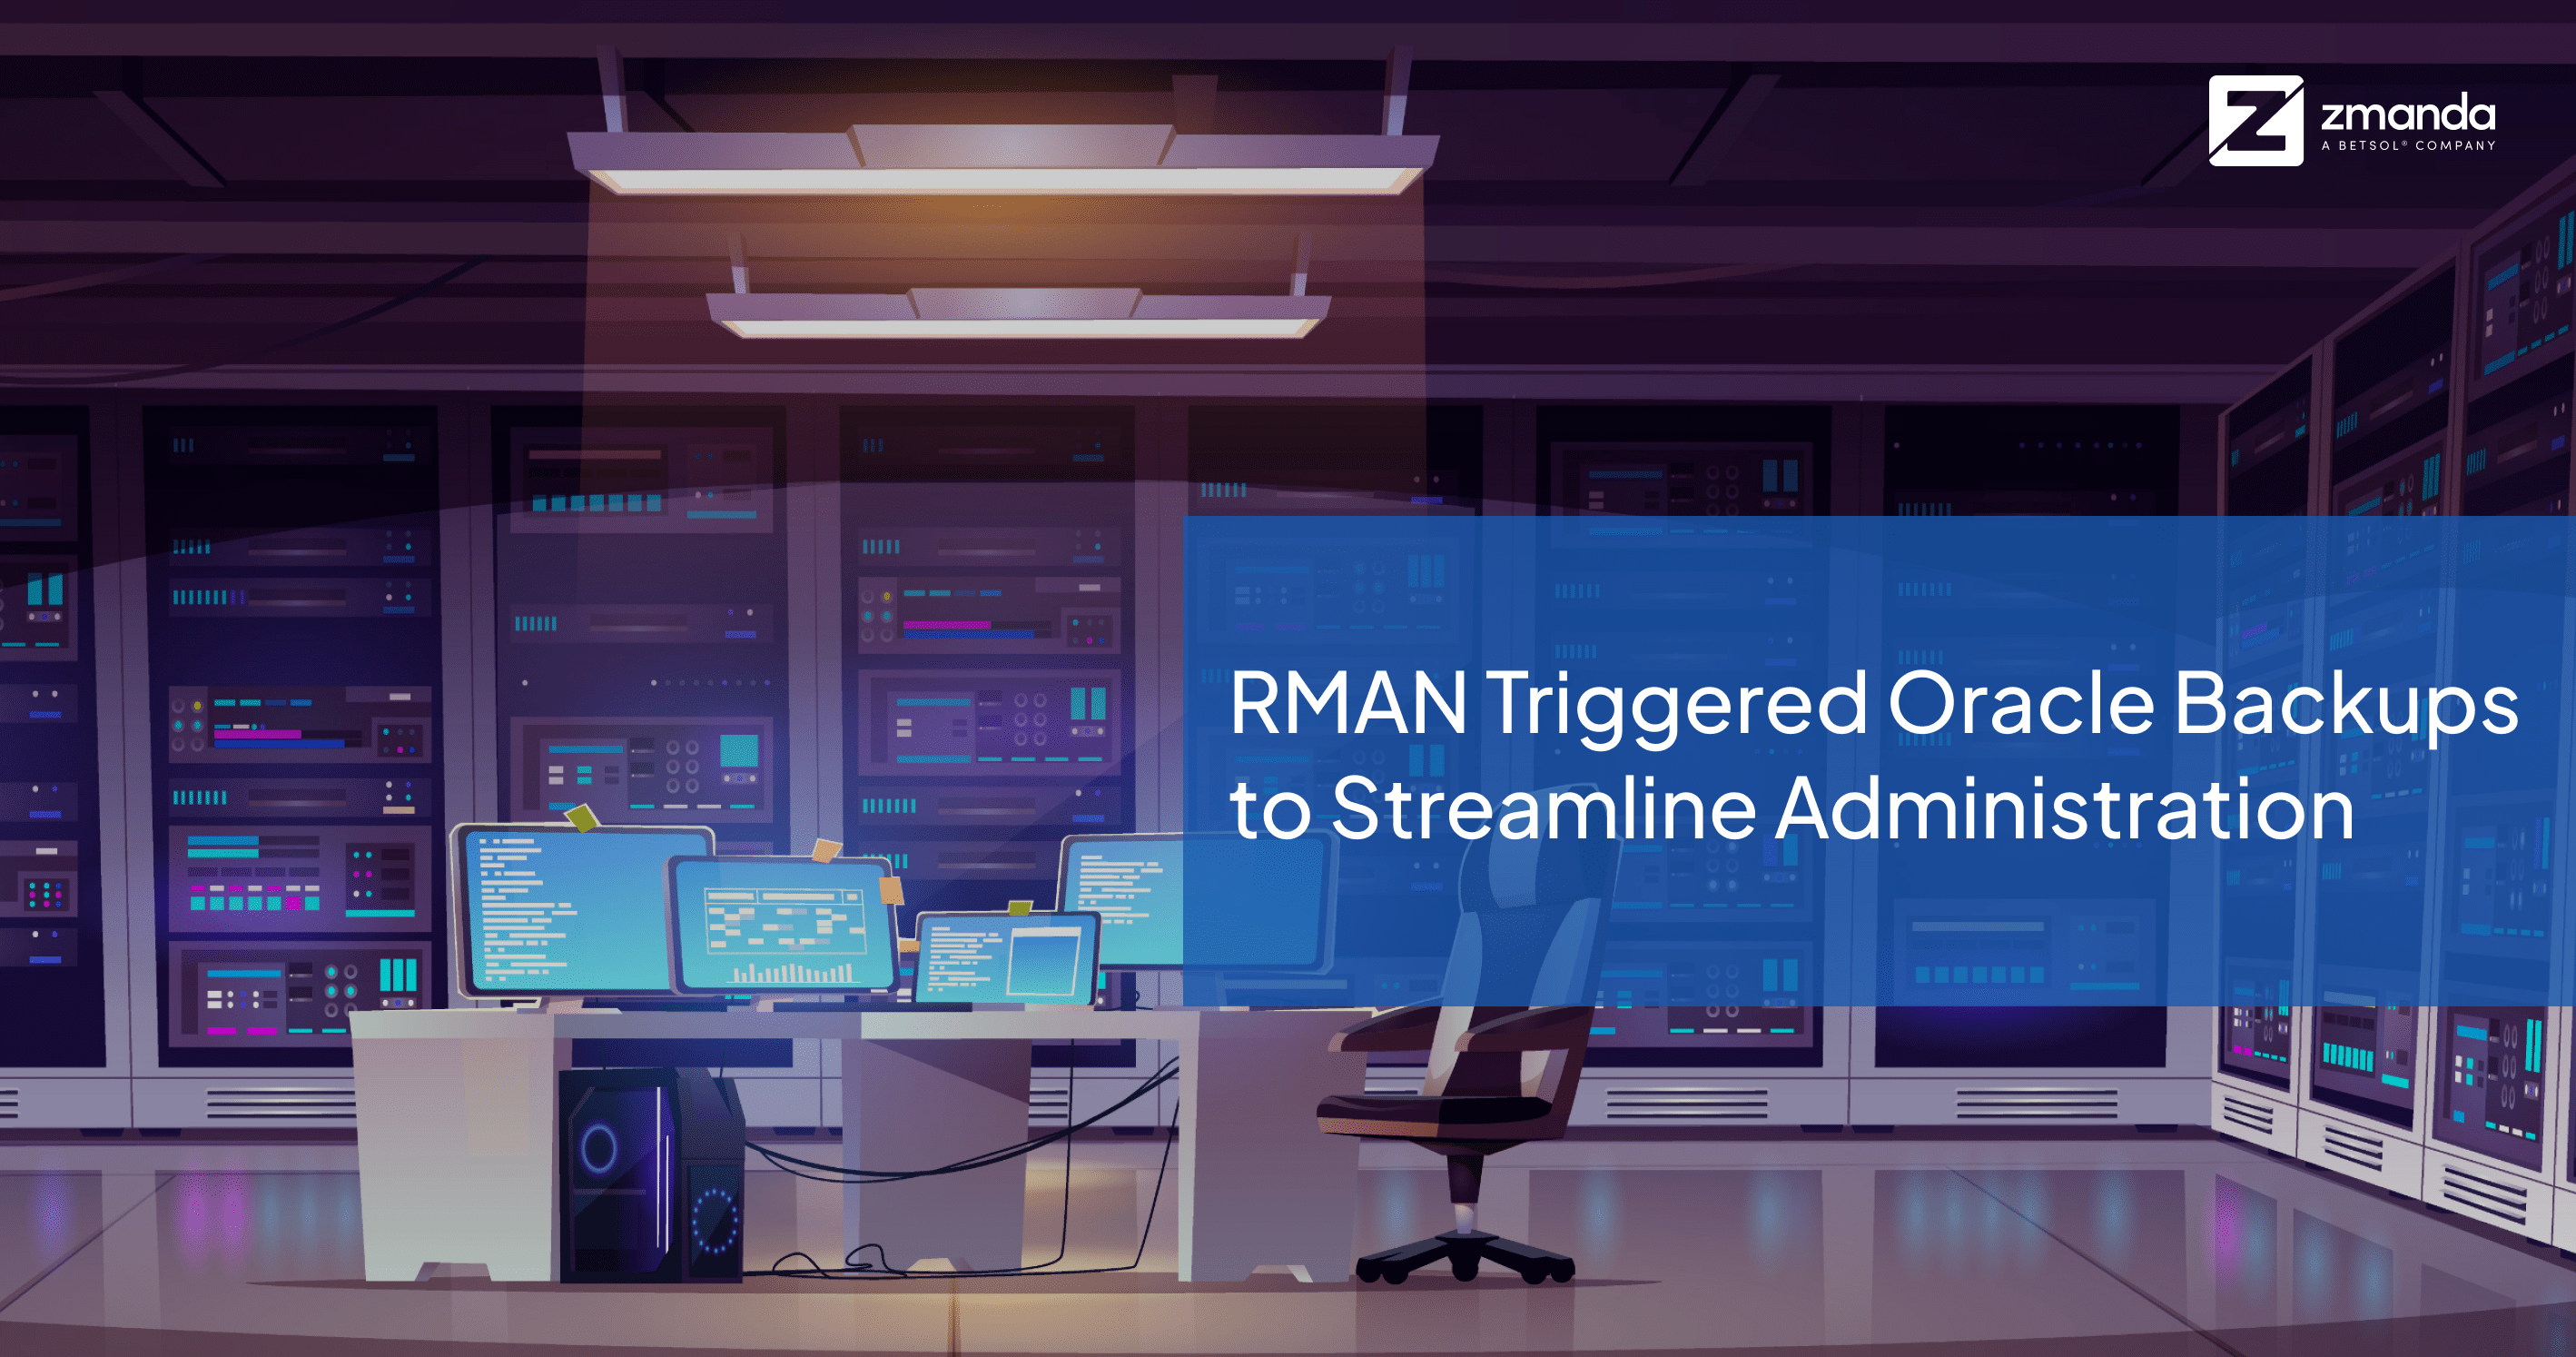 RMAN инициировал резервное копирование Oracle для упрощения администрирования